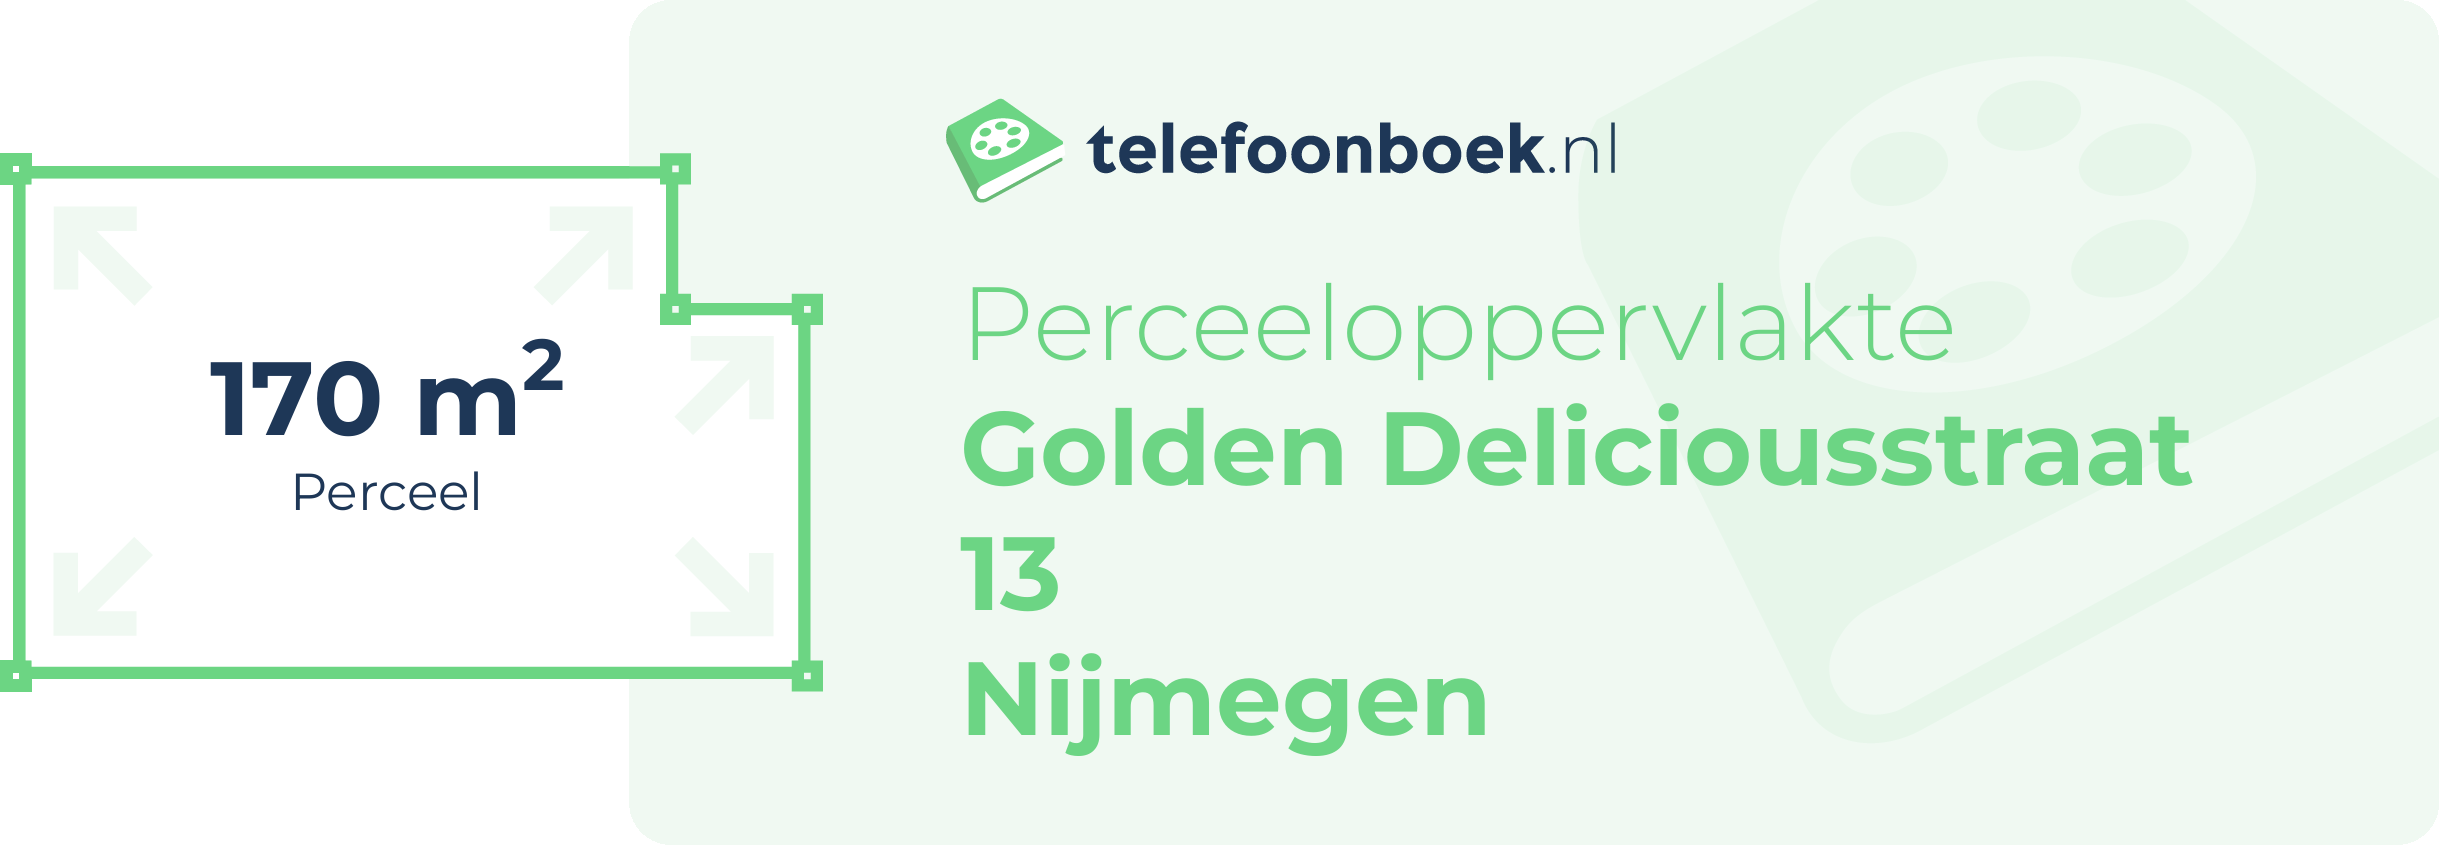 Perceeloppervlakte Golden Deliciousstraat 13 Nijmegen